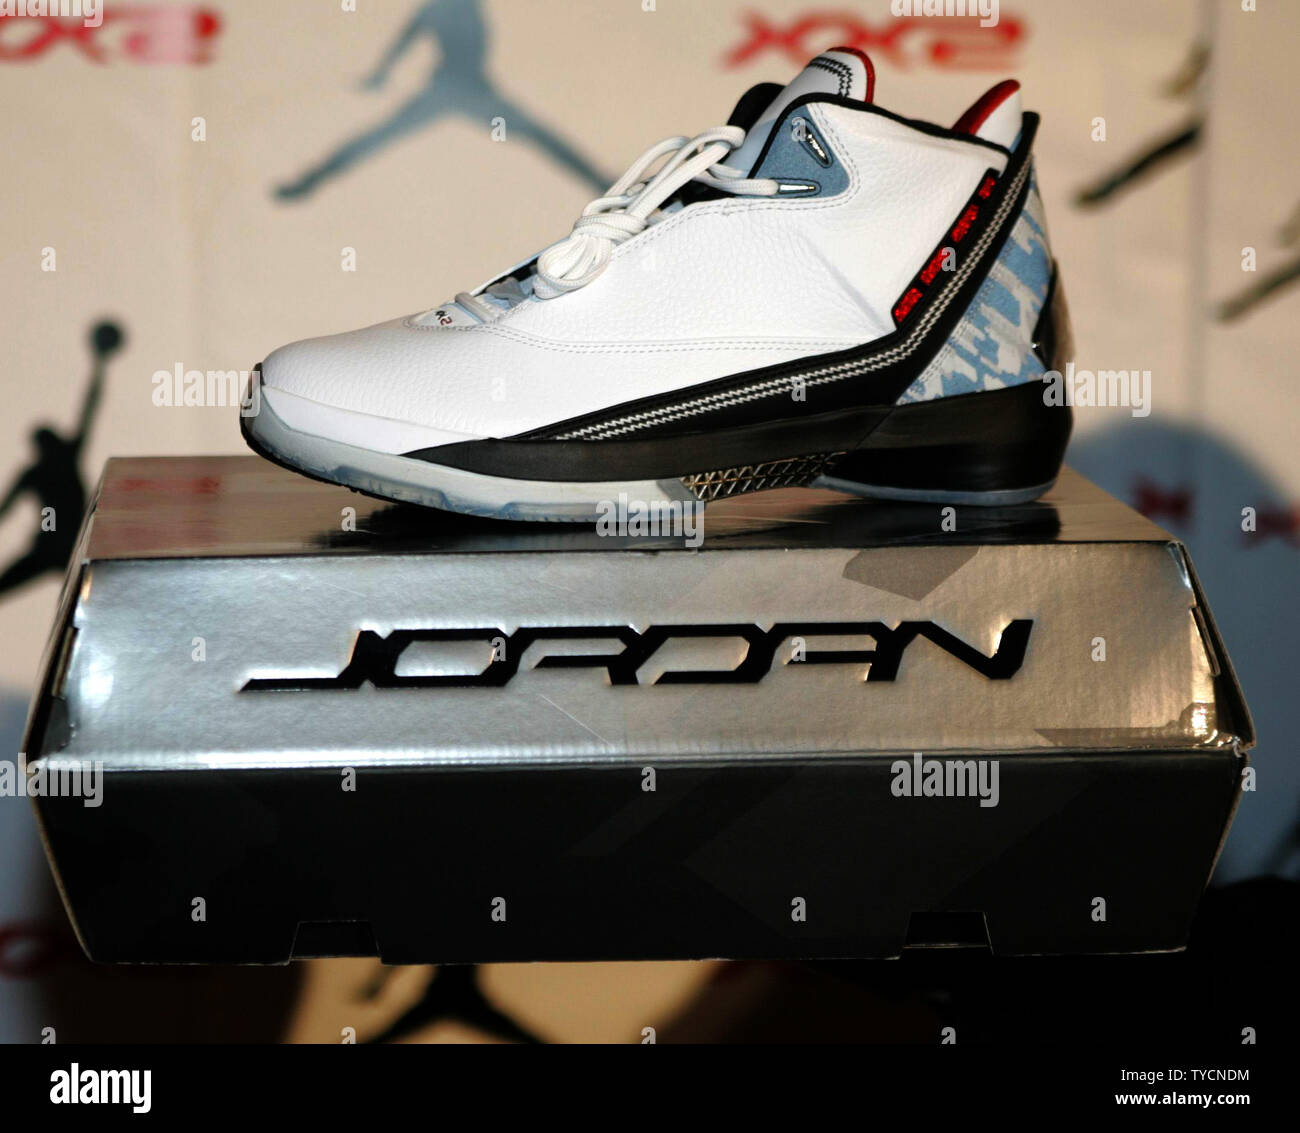 2007 jordans shoes